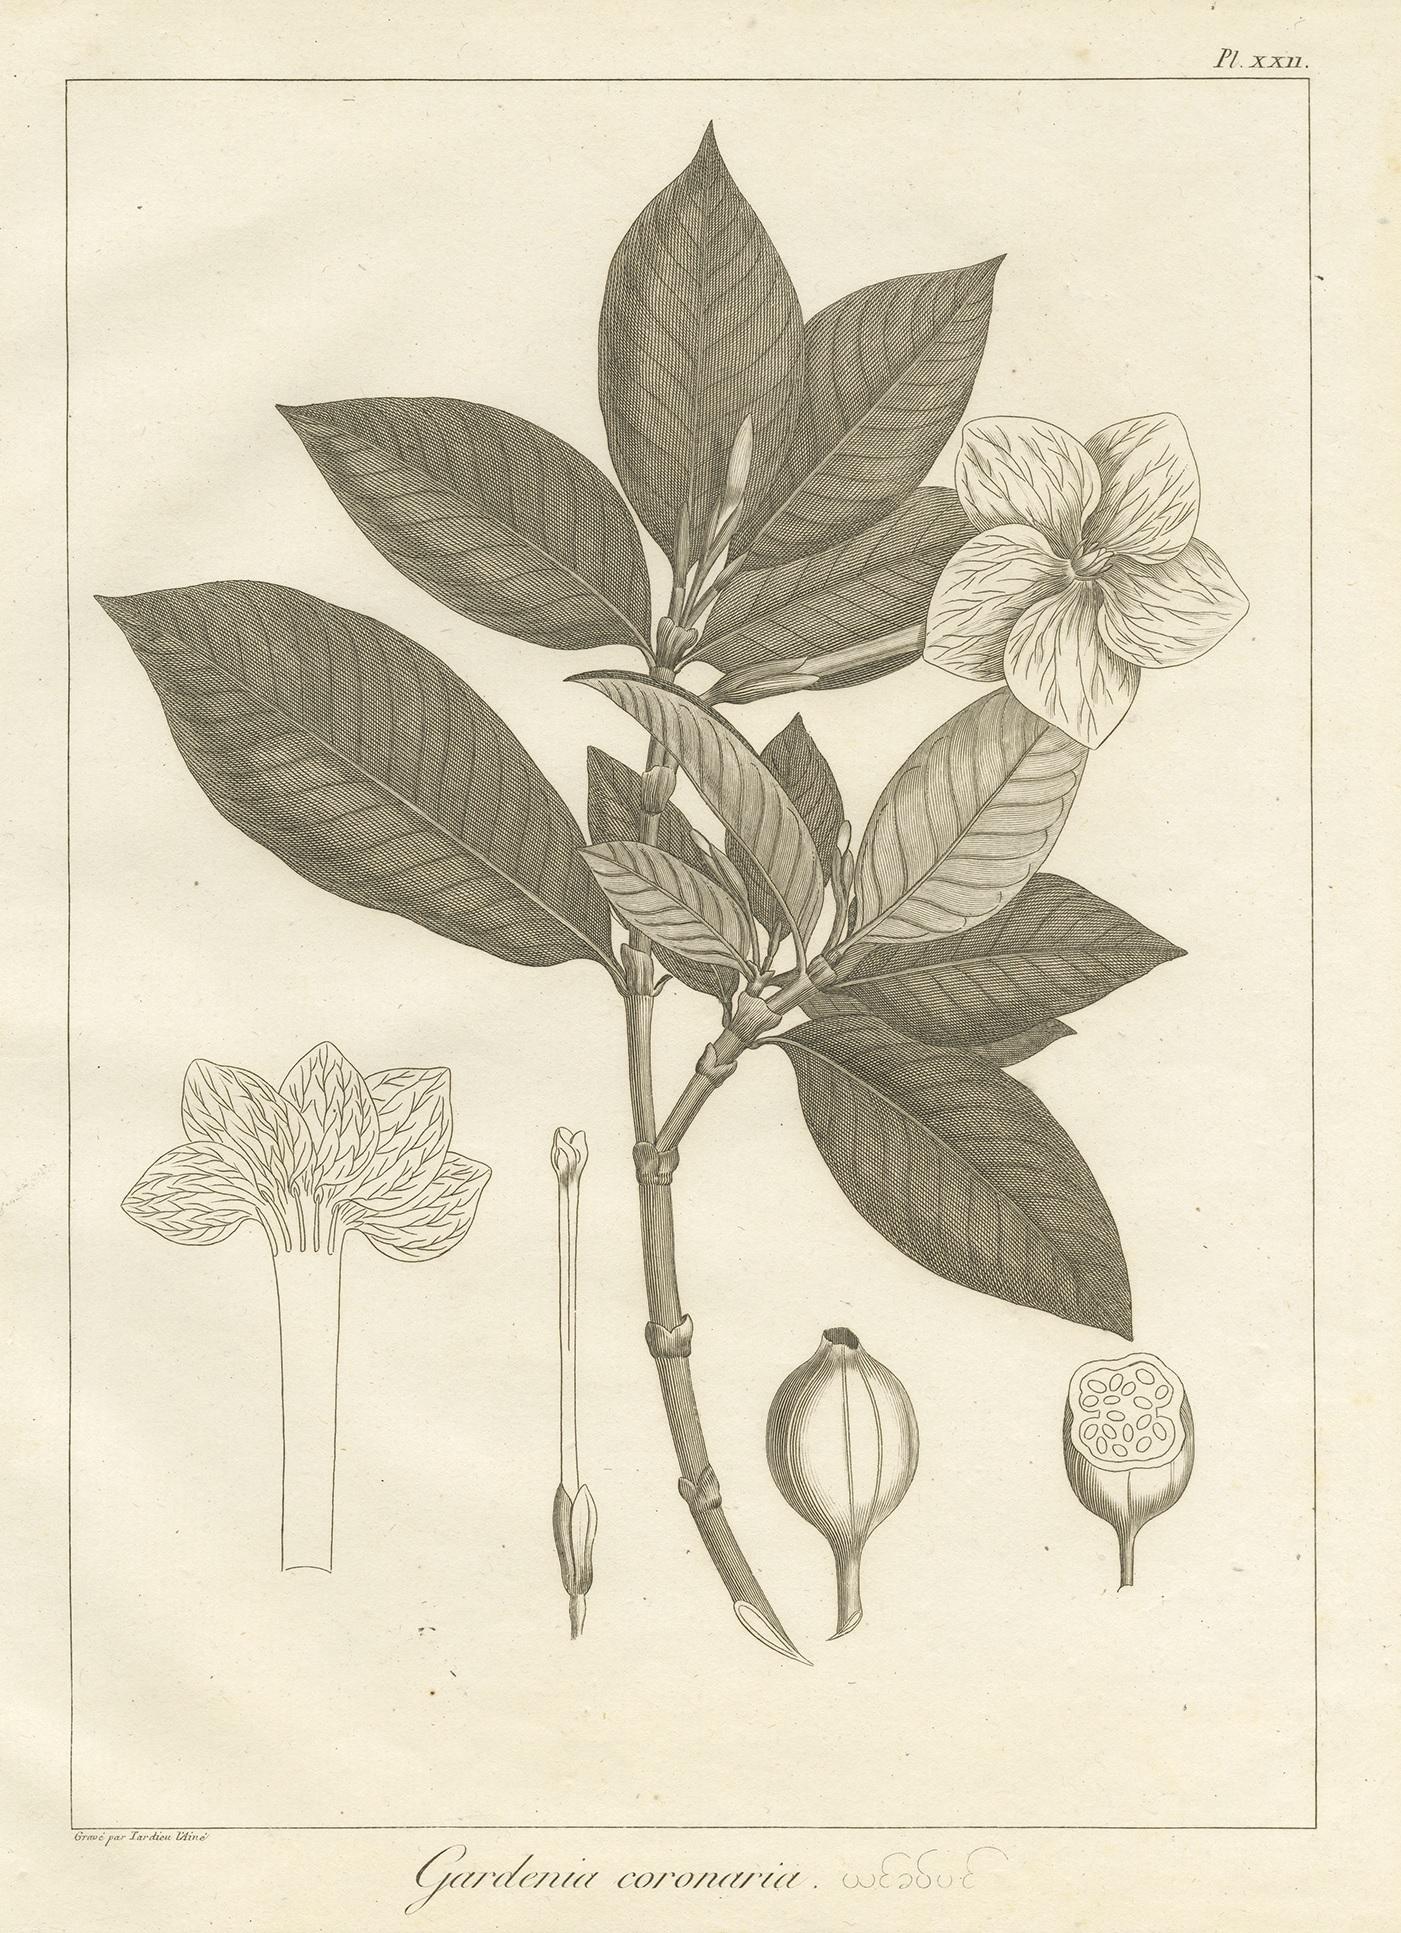 Antique print titled 'Gardenia coronaria'. Print of the crown gardenia plant. This print originates from 'Relation de l'Ambassade Anglaise, envoyée en 1795 dans le Royaume d'Ava, ou l'Empire des Birmans' by M. Symes. Published 1800.